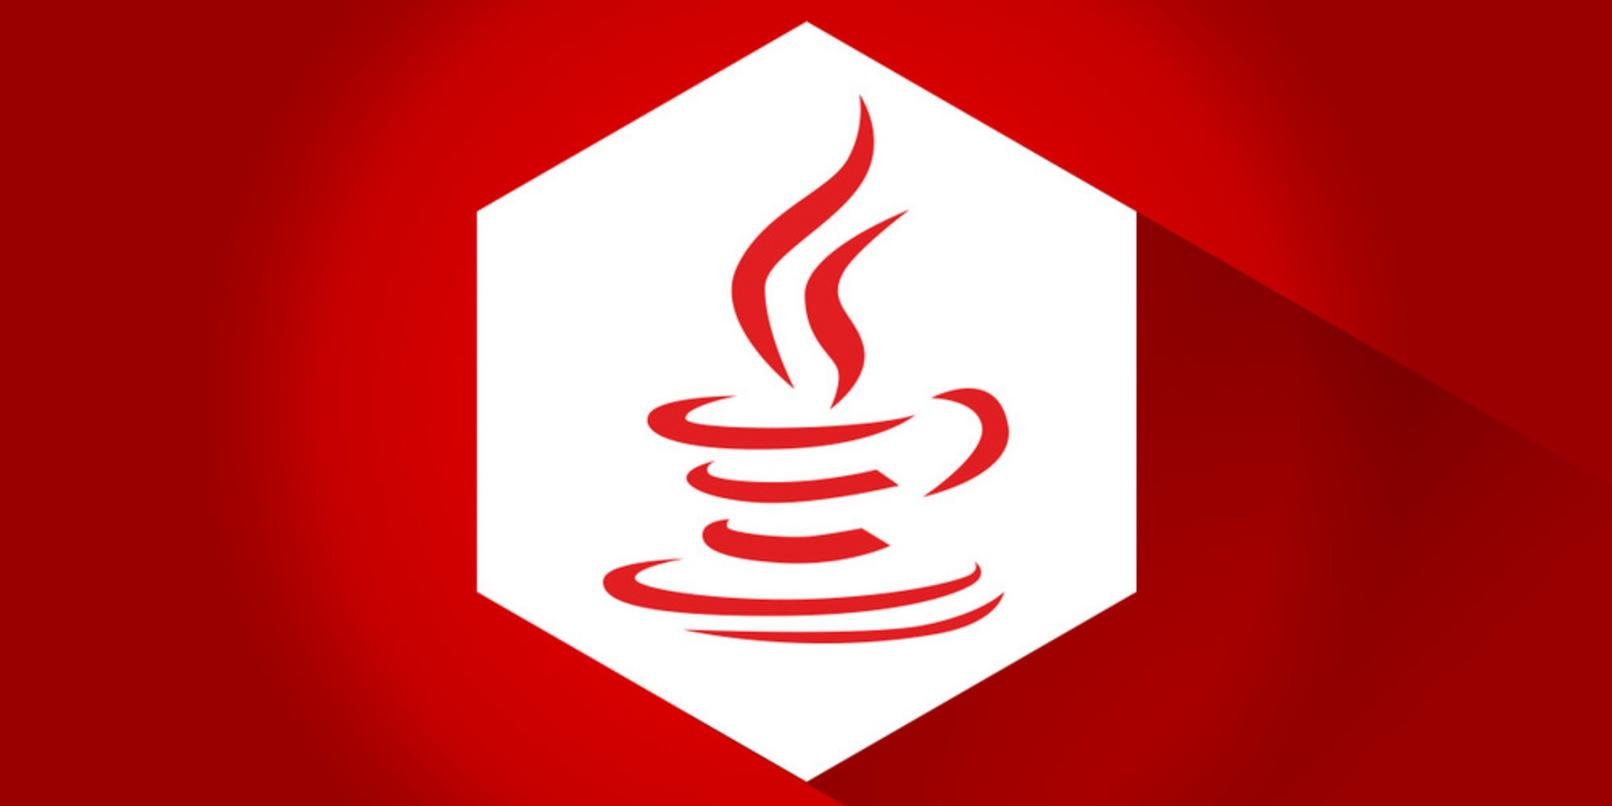 Java лого